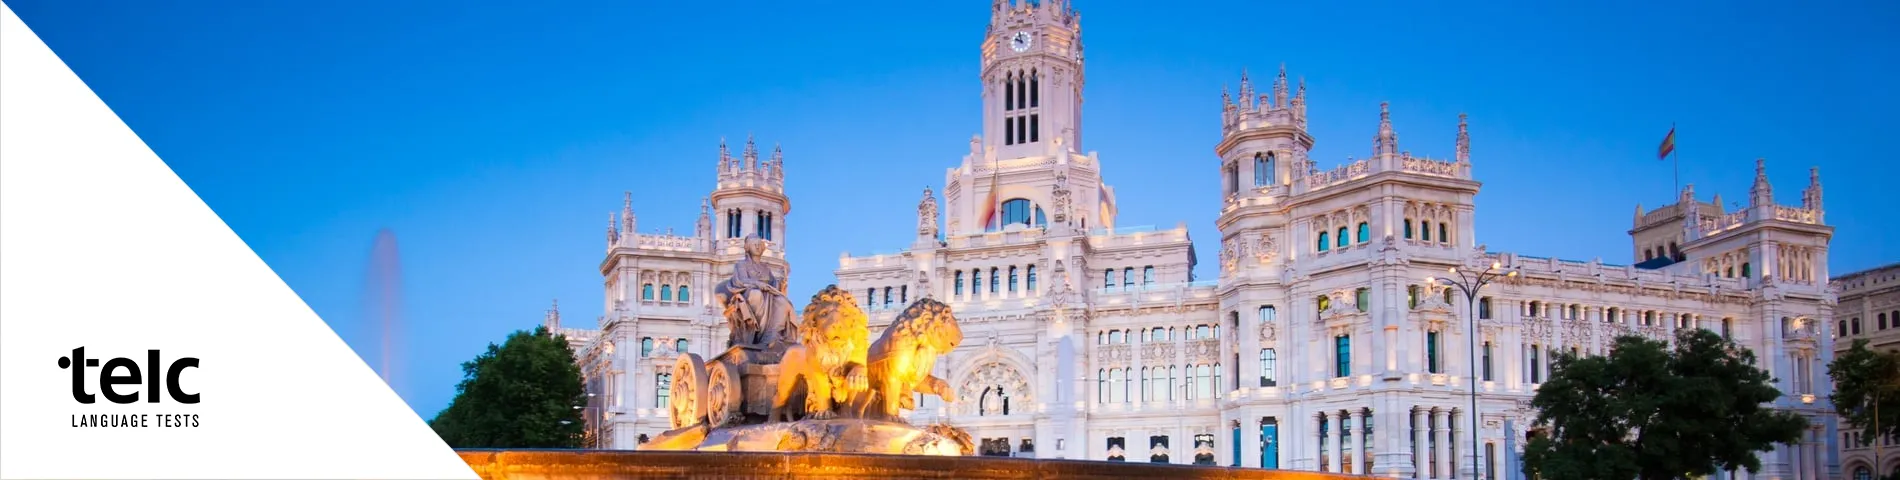 马德里 - 欧洲语言证书（TELC）